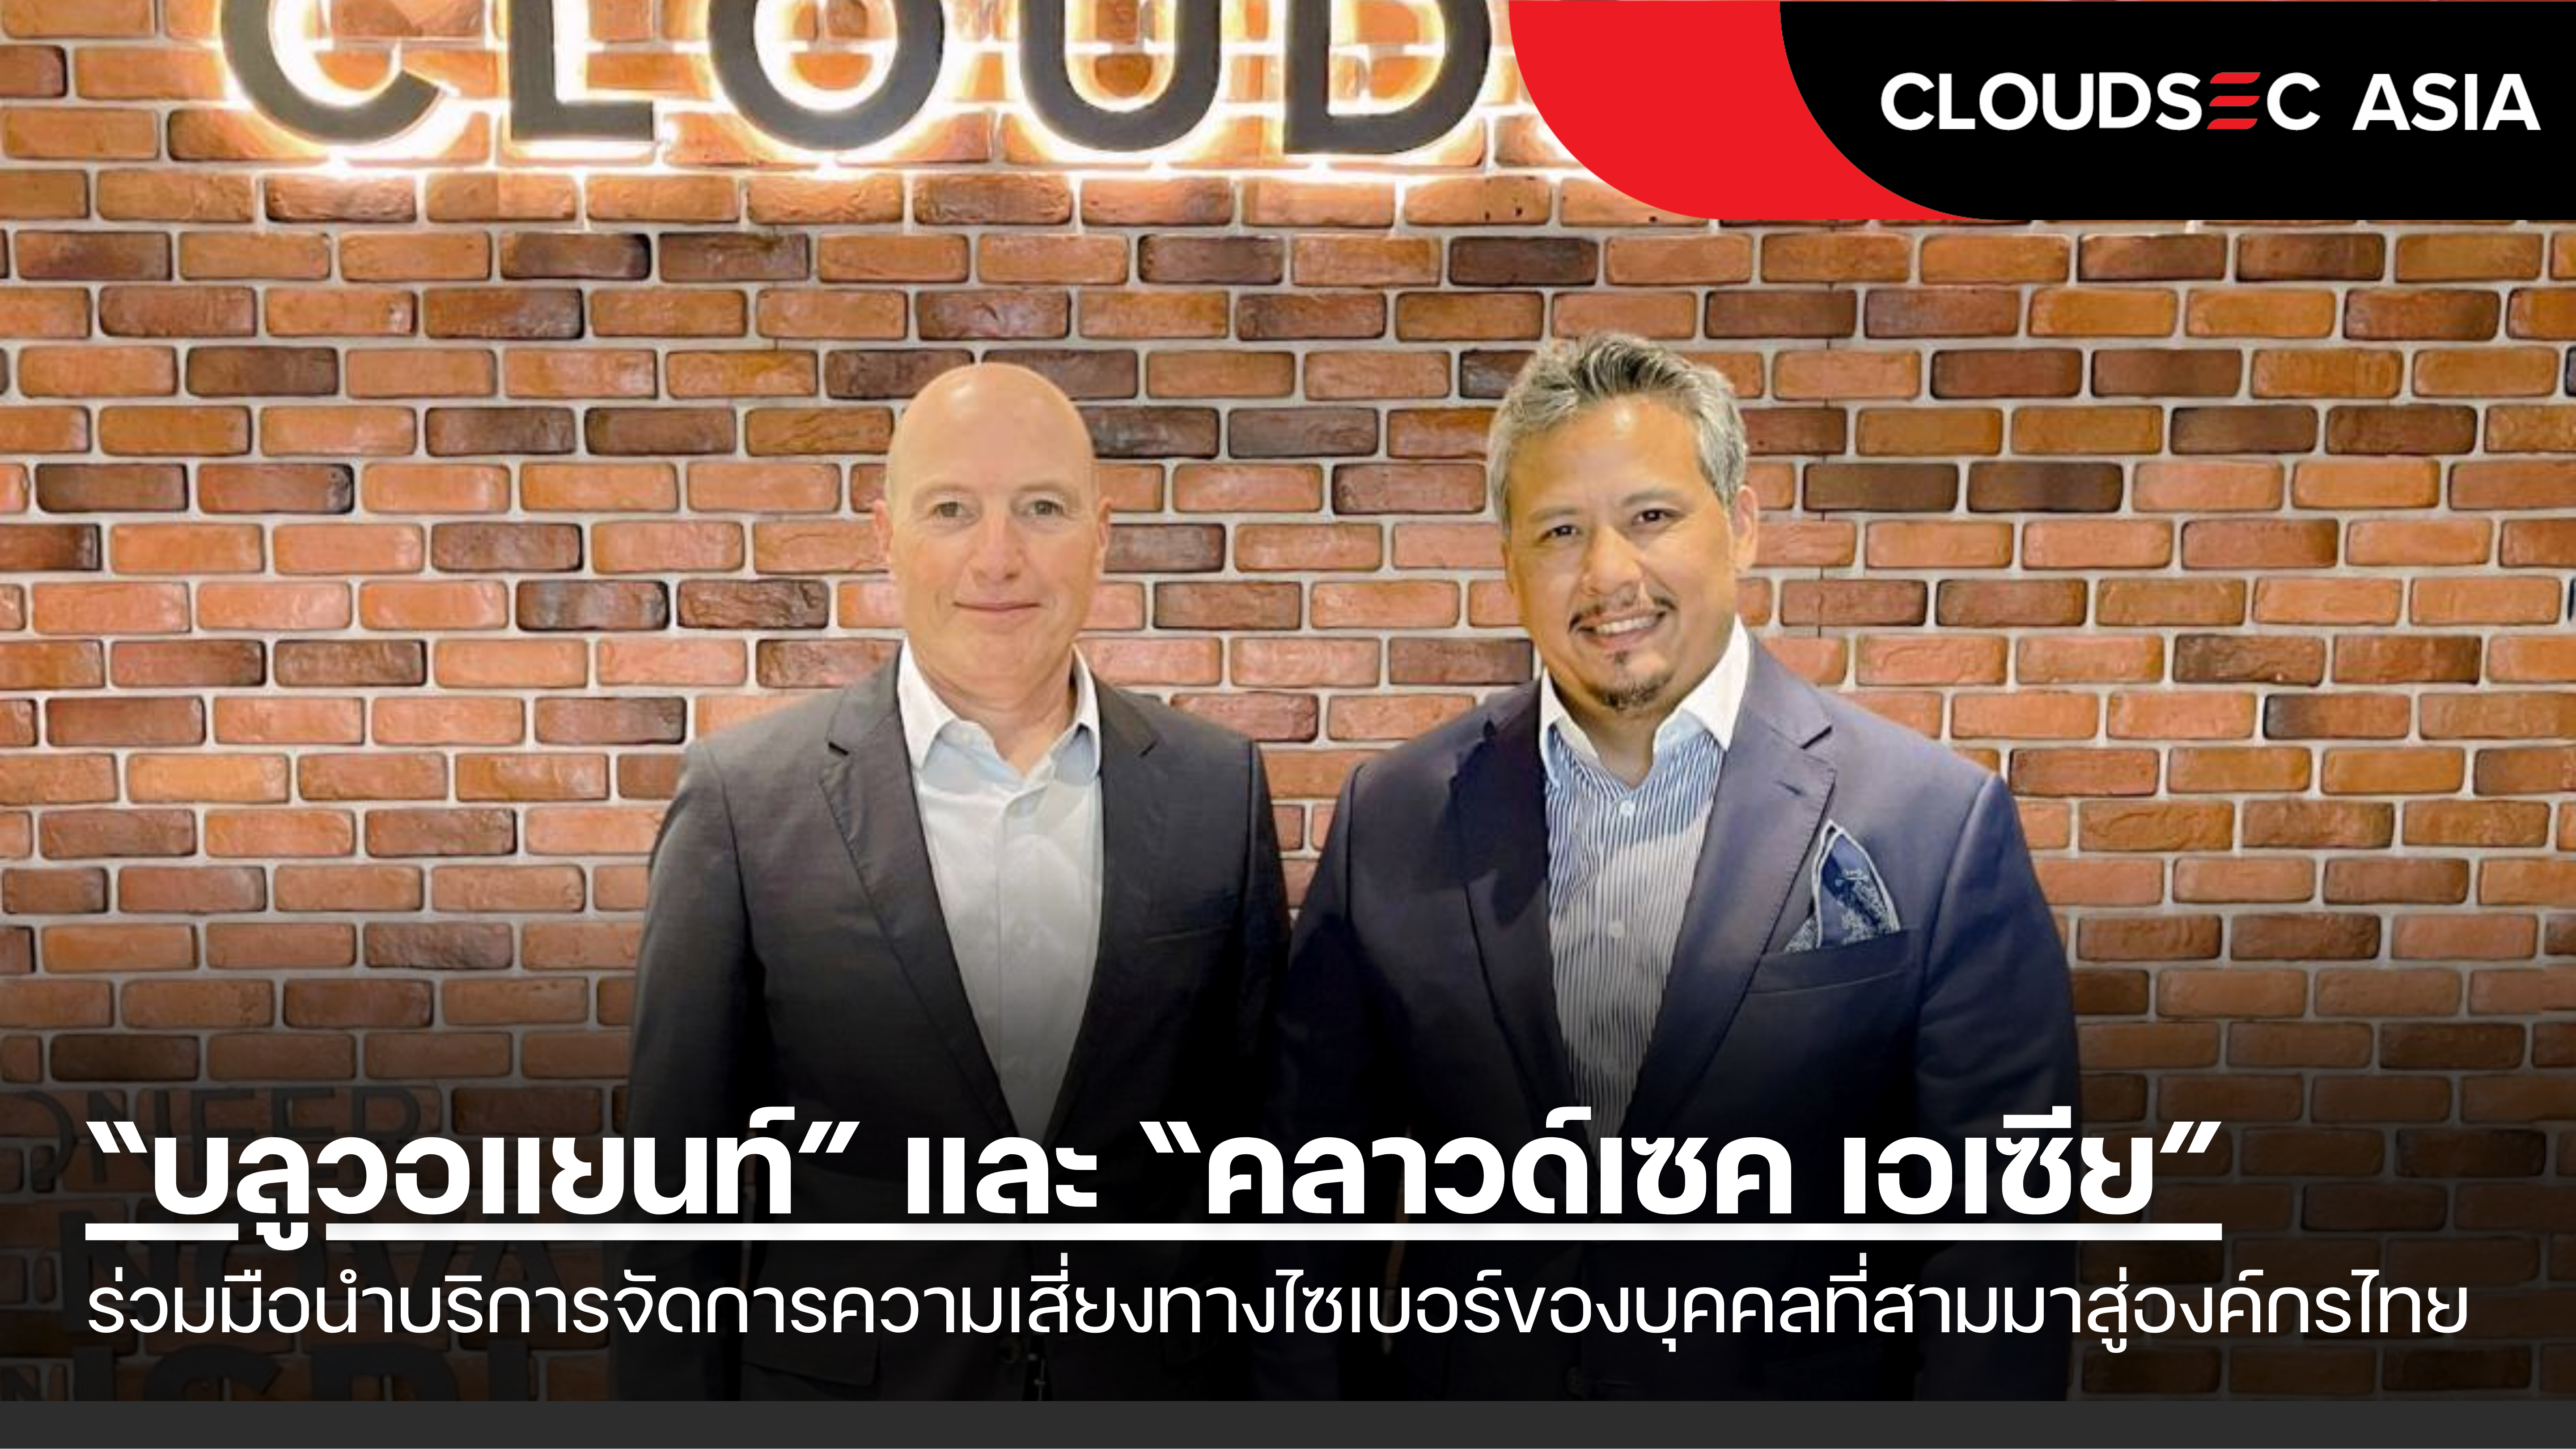 “บลูวอแยนท์” และ “คลาวด์เซค เอเซีย” ร่วมมือนำบริการจัดการความเสี่ยงทางไซเบอร์ของบุคคลที่สามมาสู่องค์กรไทย 